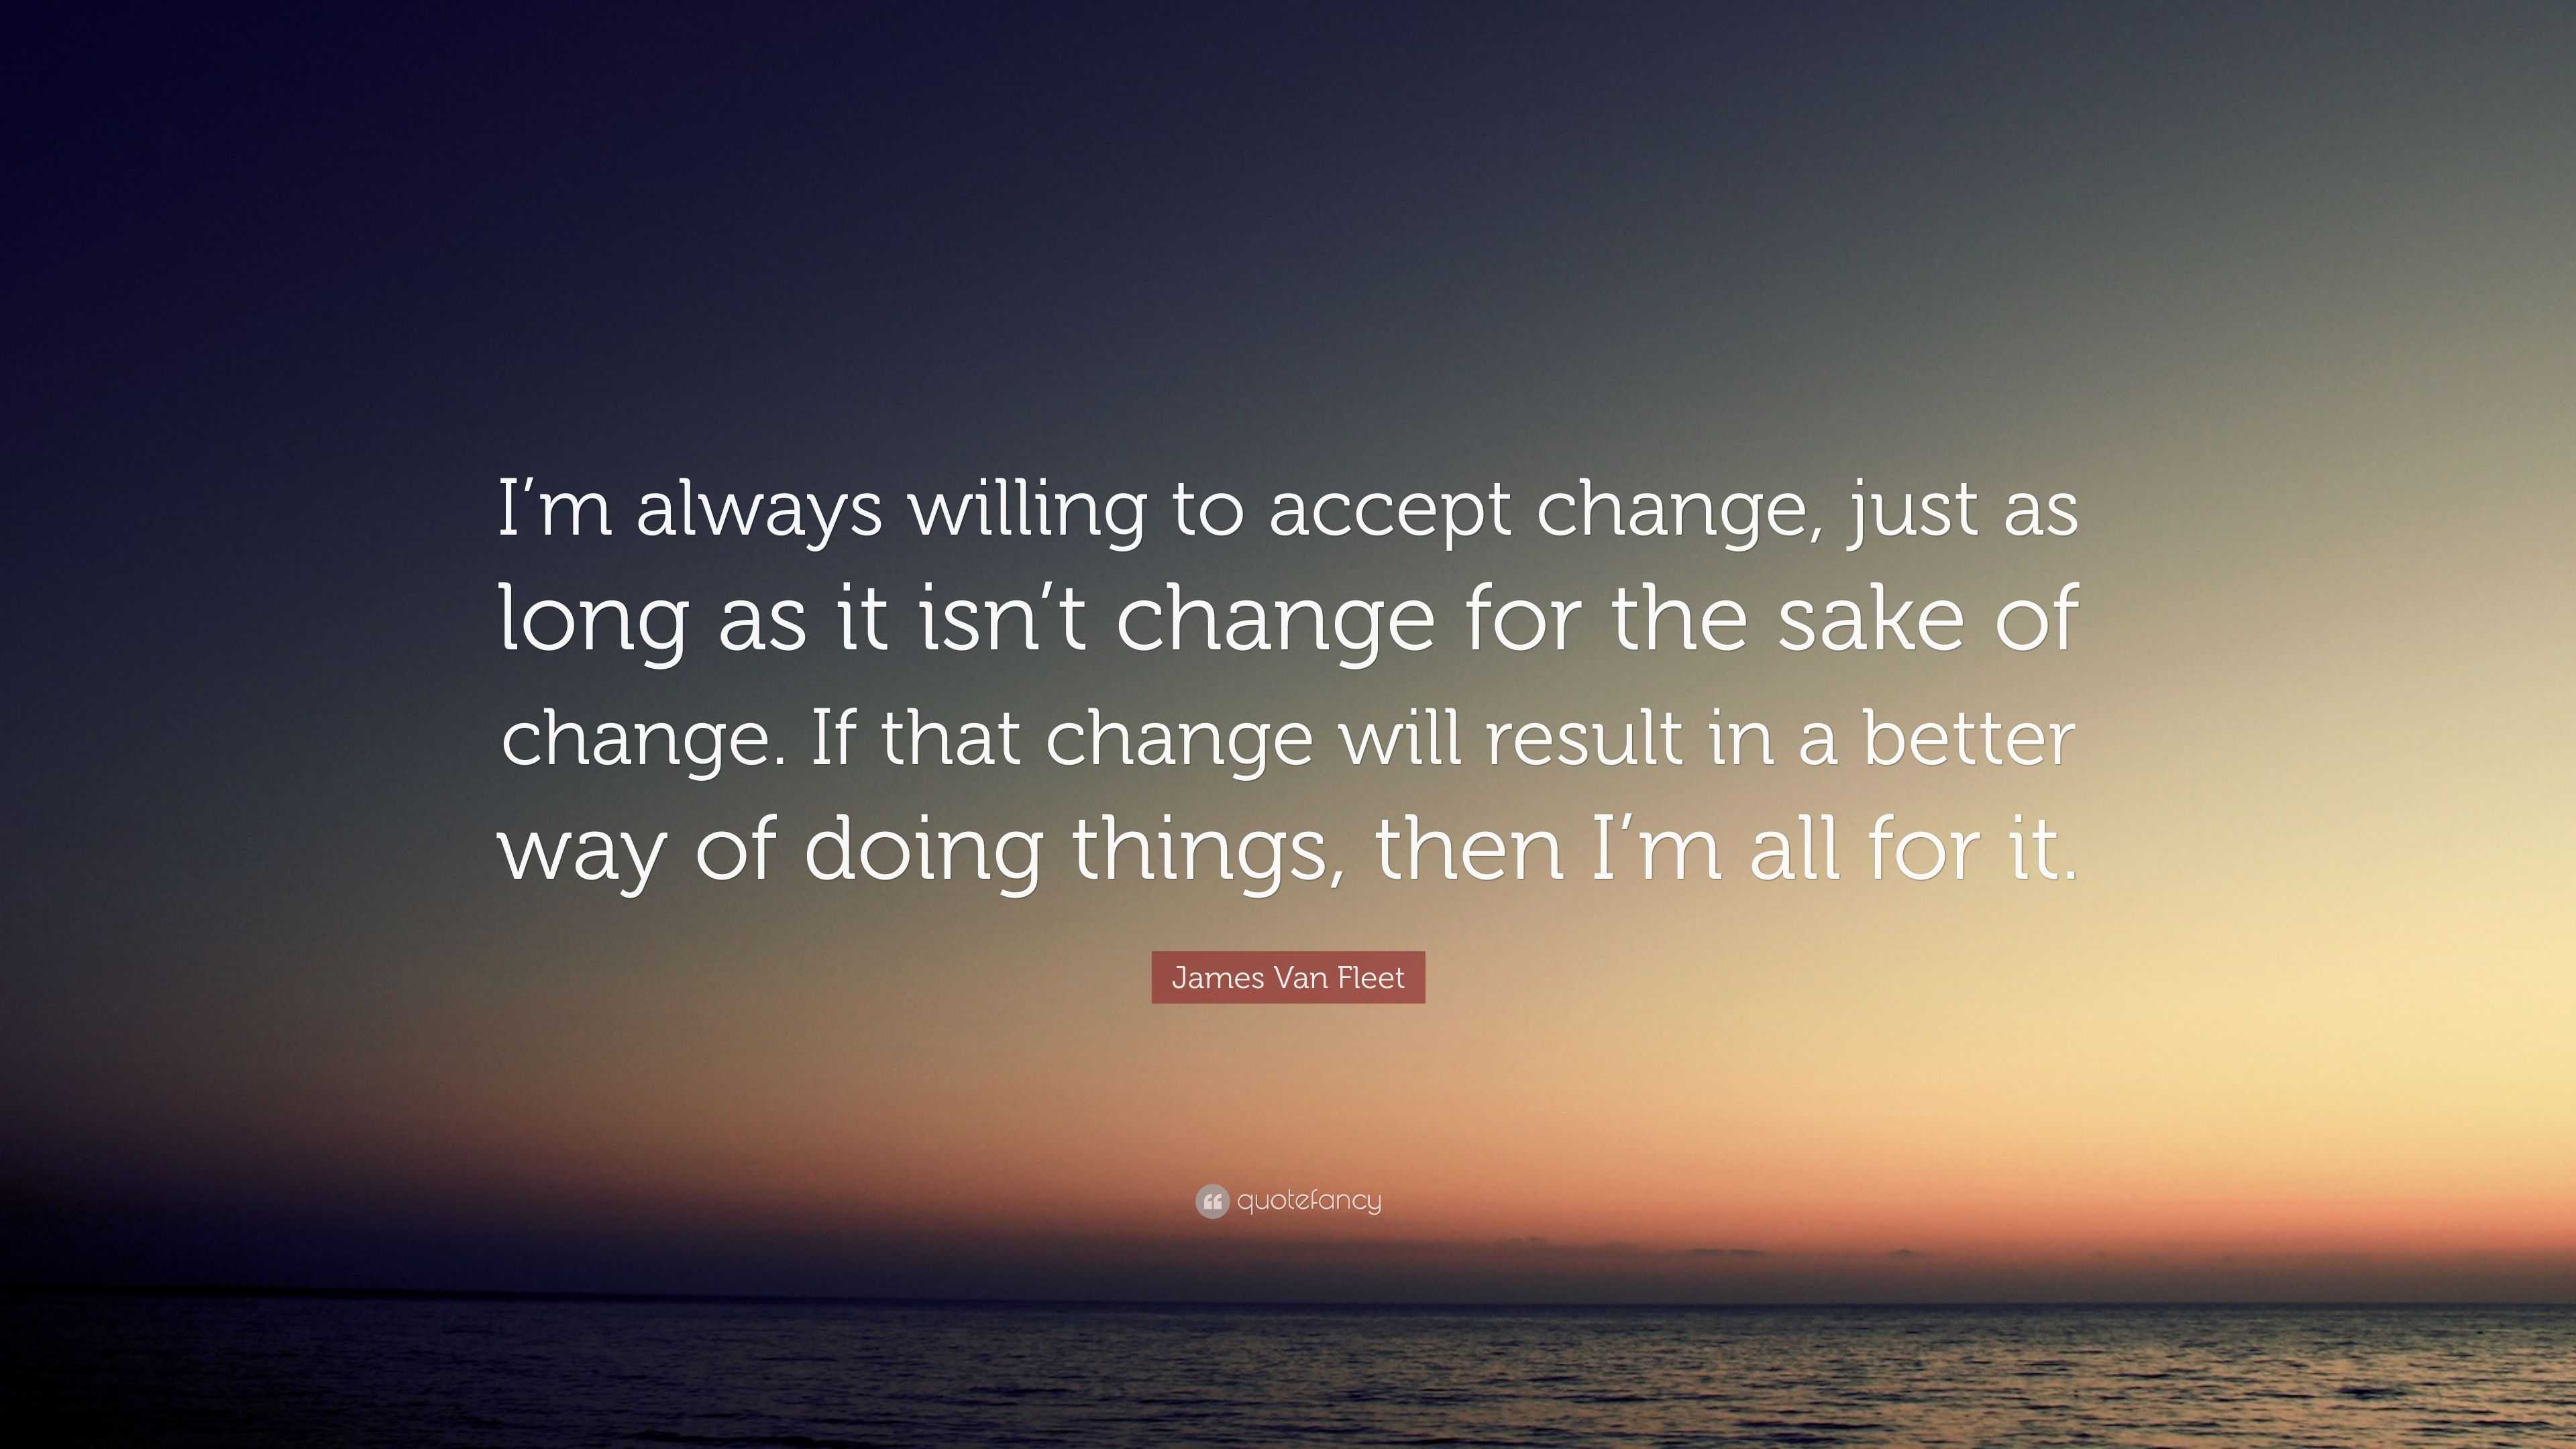 James Van Fleet Quote: “I’m always willing to accept change, just as ...